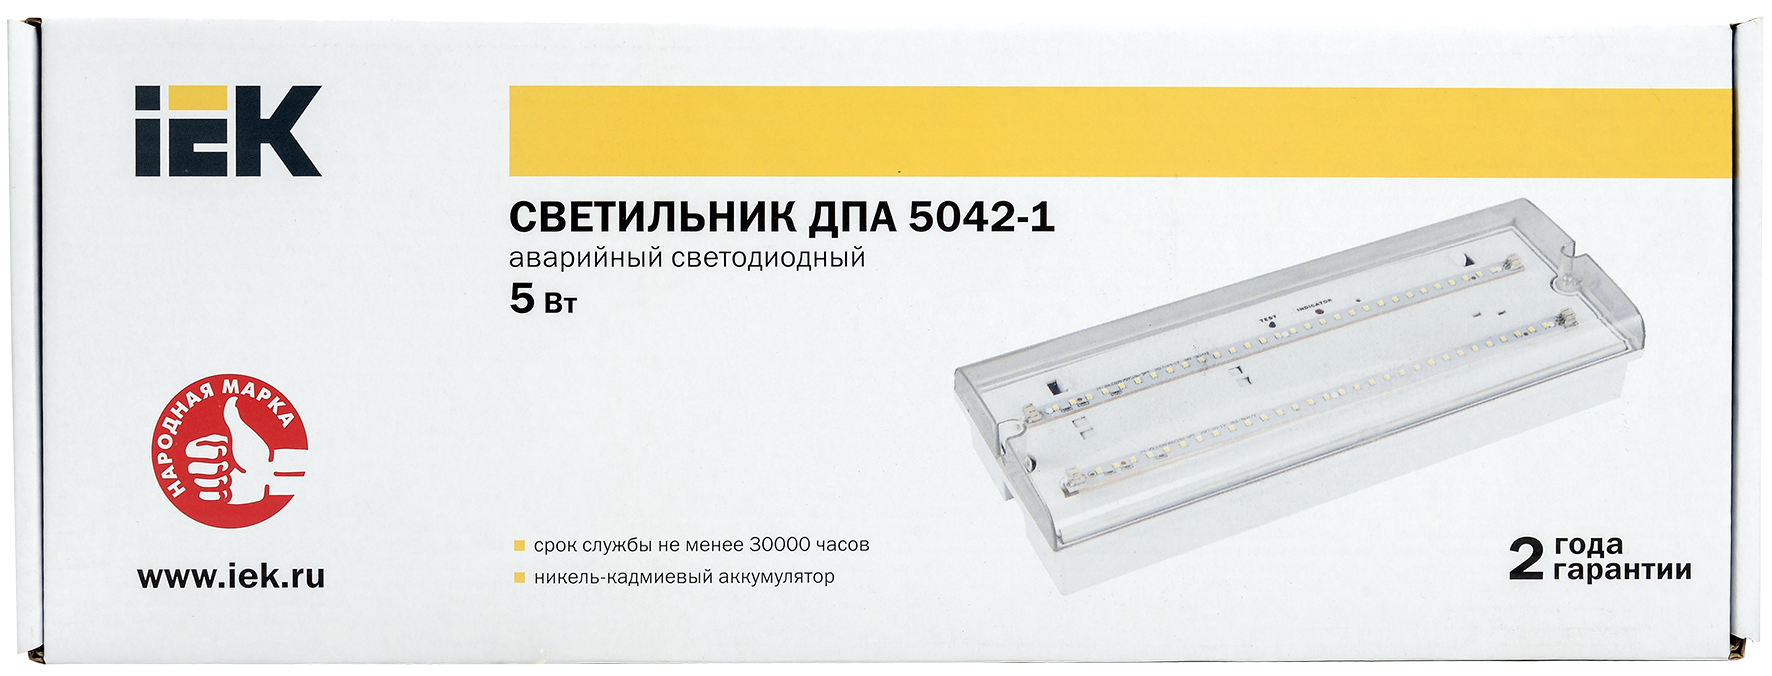 Светильник аварийный светодиодный ДПА 5042-1 постоянного/непостоянного действия 1ч IP65 IEK